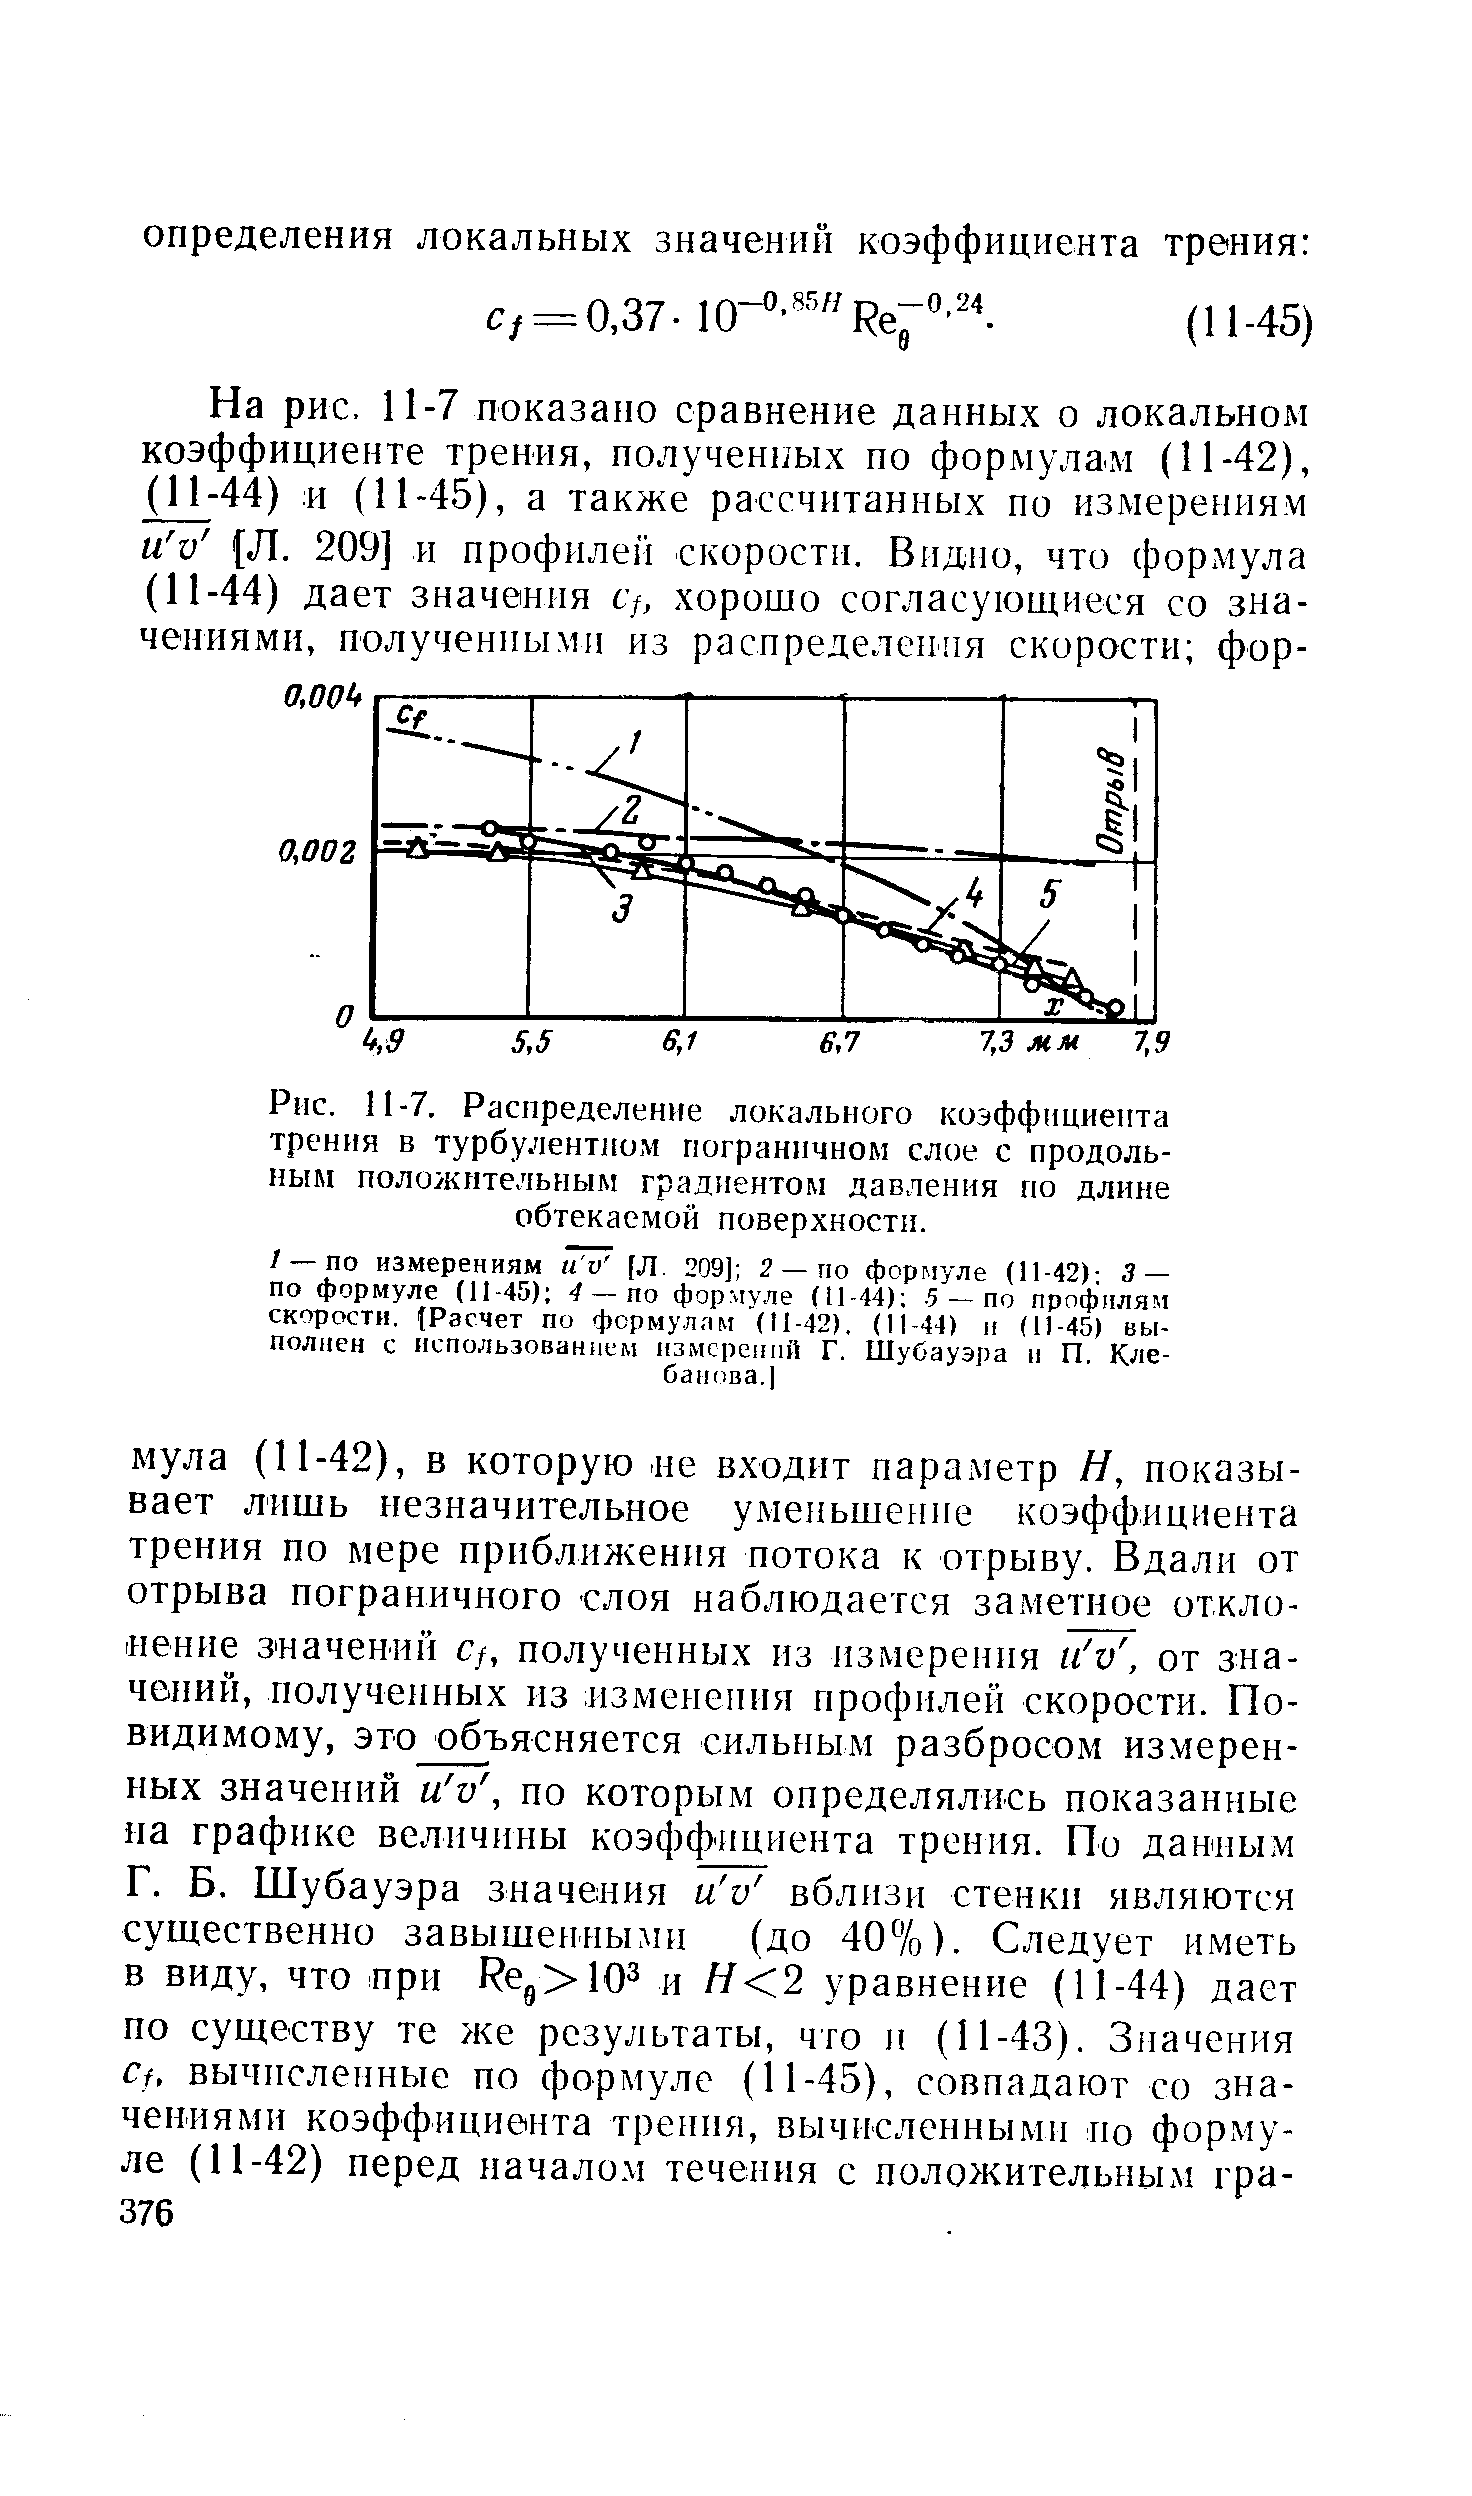 Рис. И-7. Распределение локального коэффициента тренпя в <a href="/info/19796">турбулентном пограничном слое</a> с продольным <a href="/info/203935">положительным градиентом давления</a> по длине обтекаемой поверхностн.
